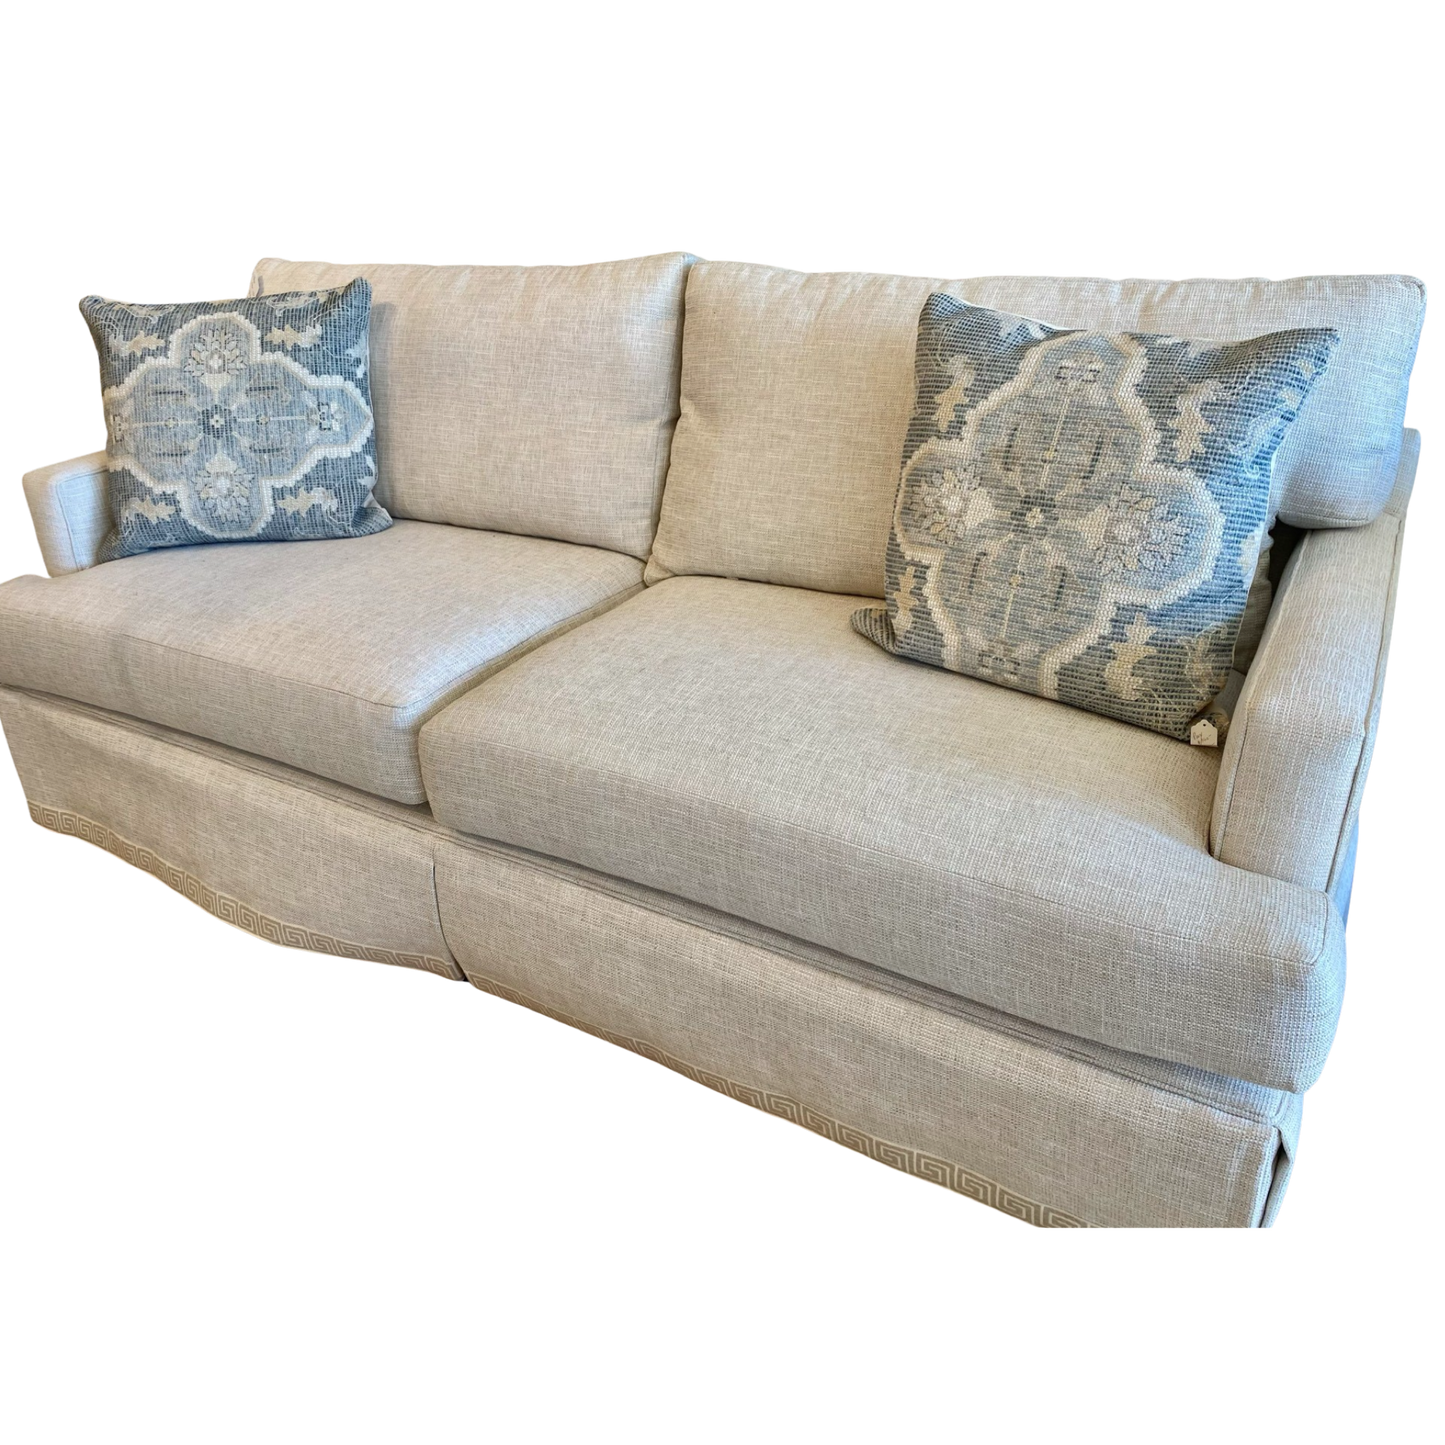 Custom ADH Couch